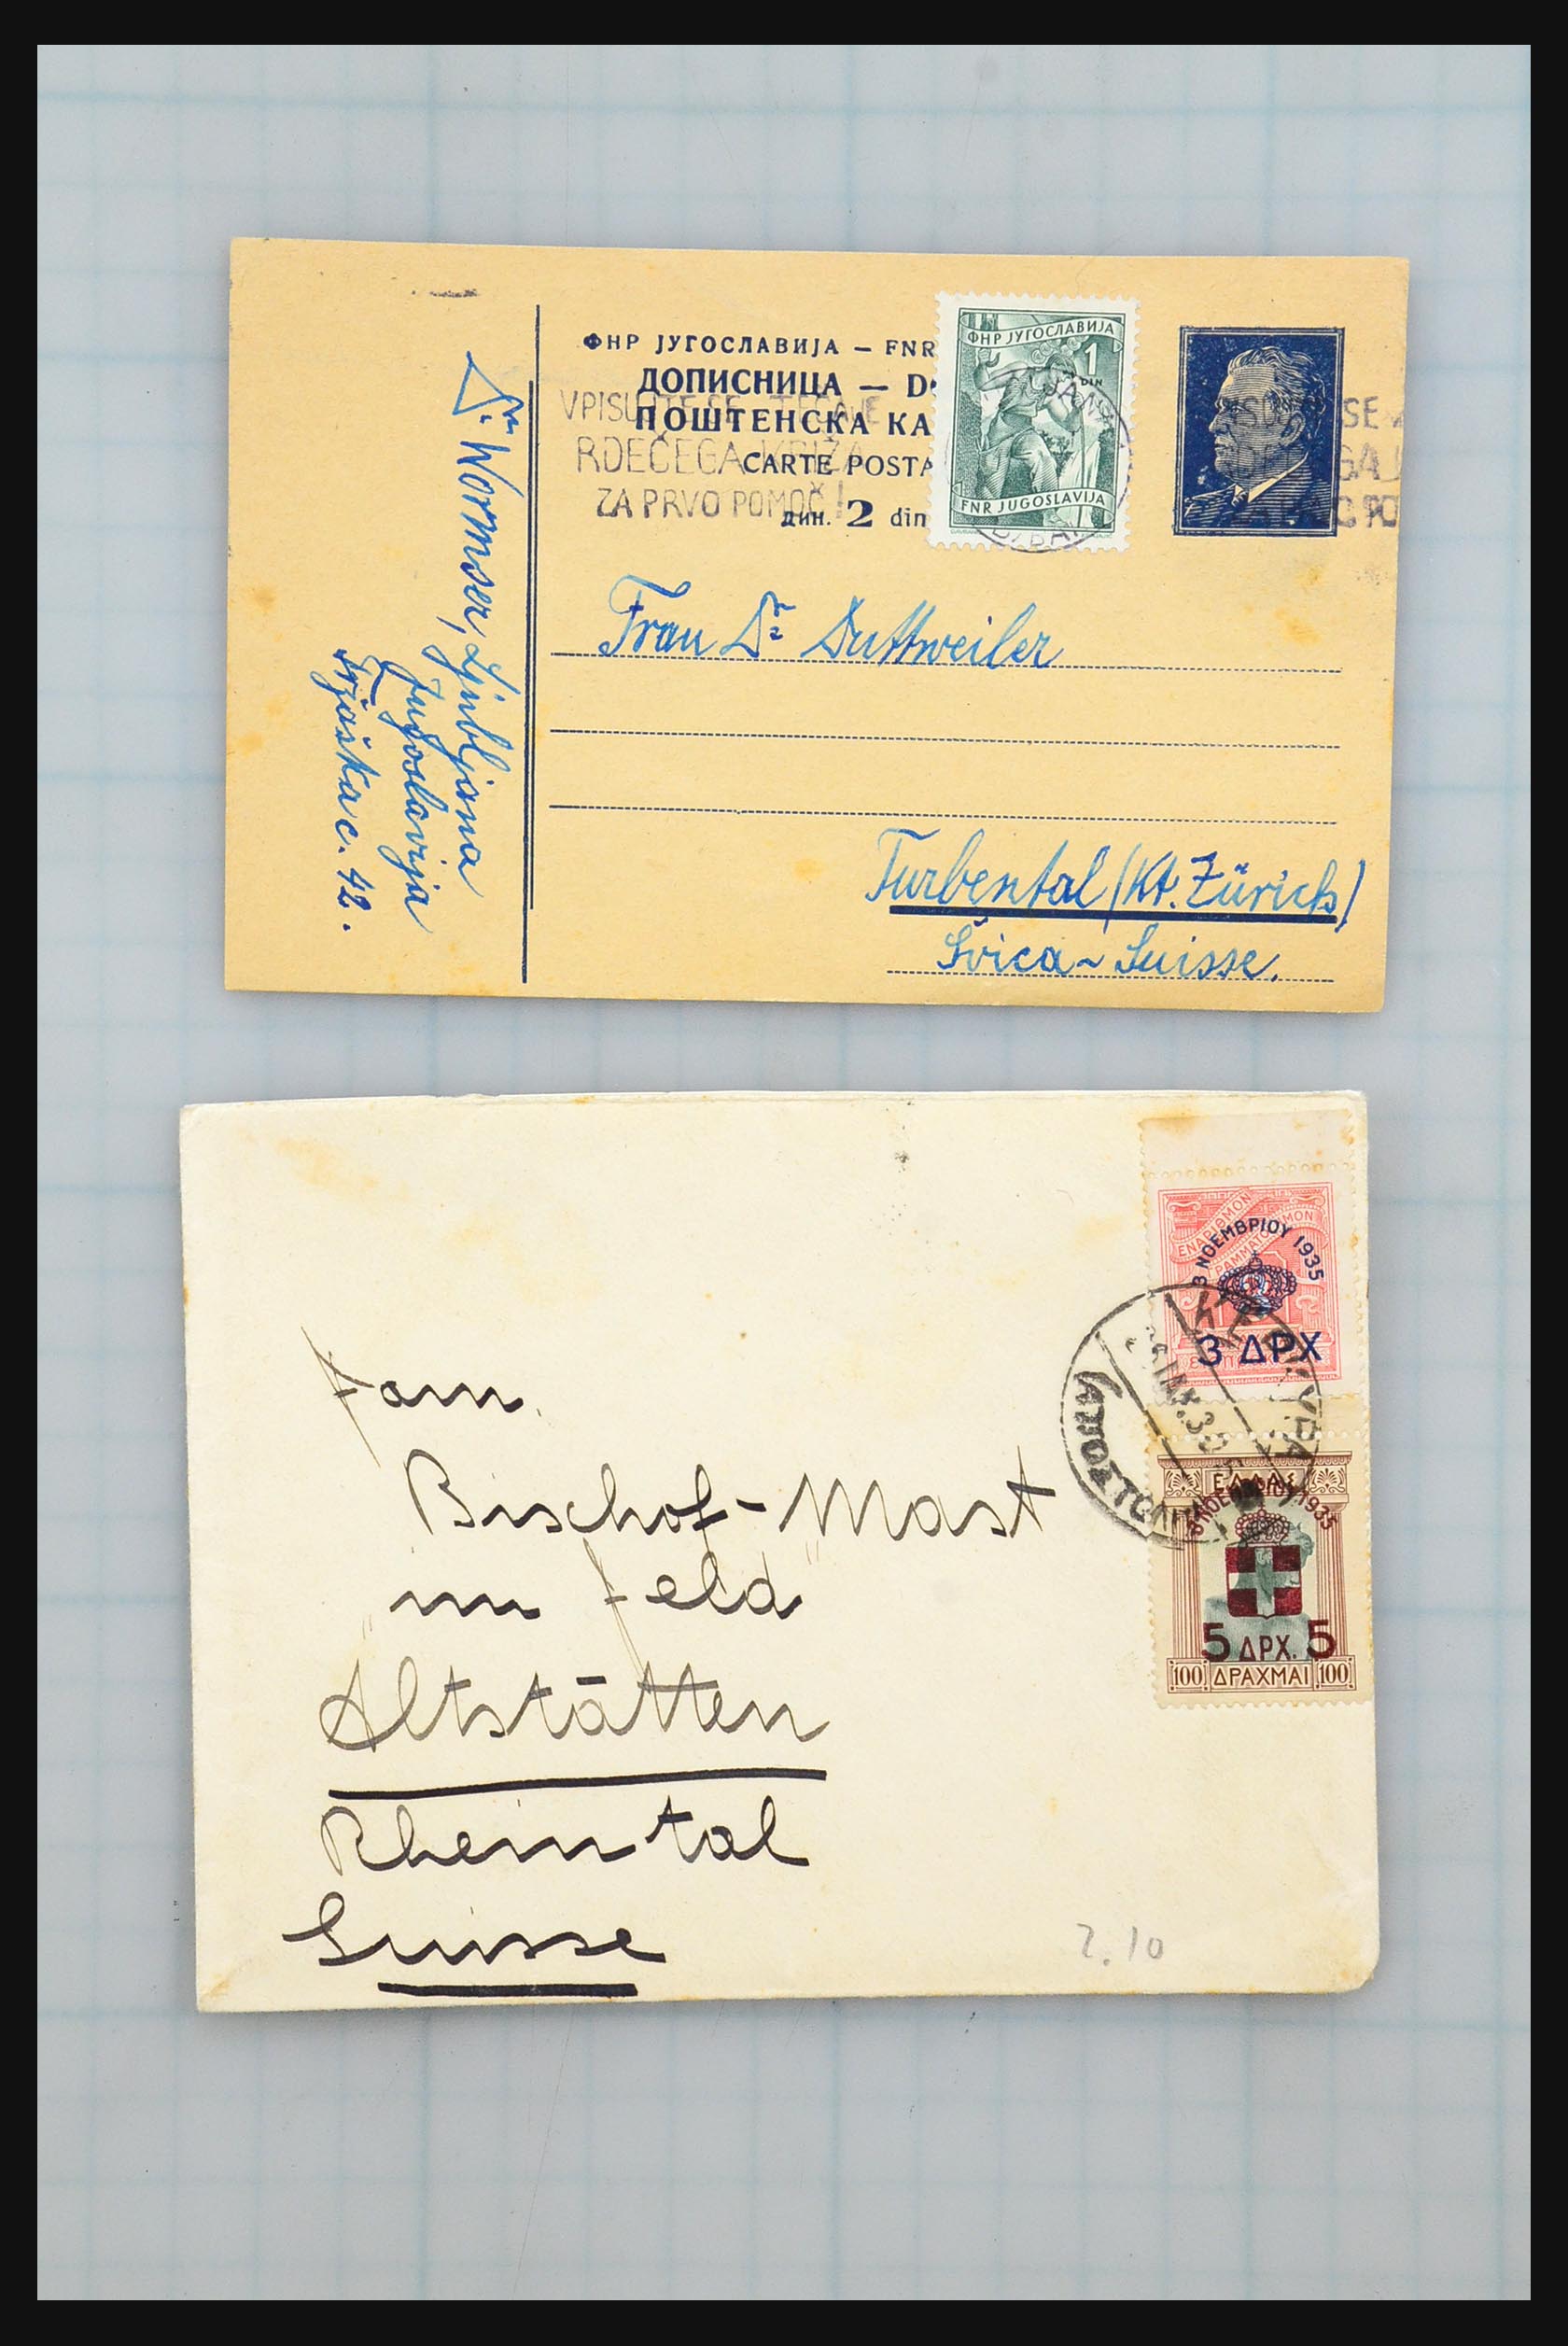 31358 021 - 31358 Portugal/Luxemburg/Griekenland brieven 1880-1960.